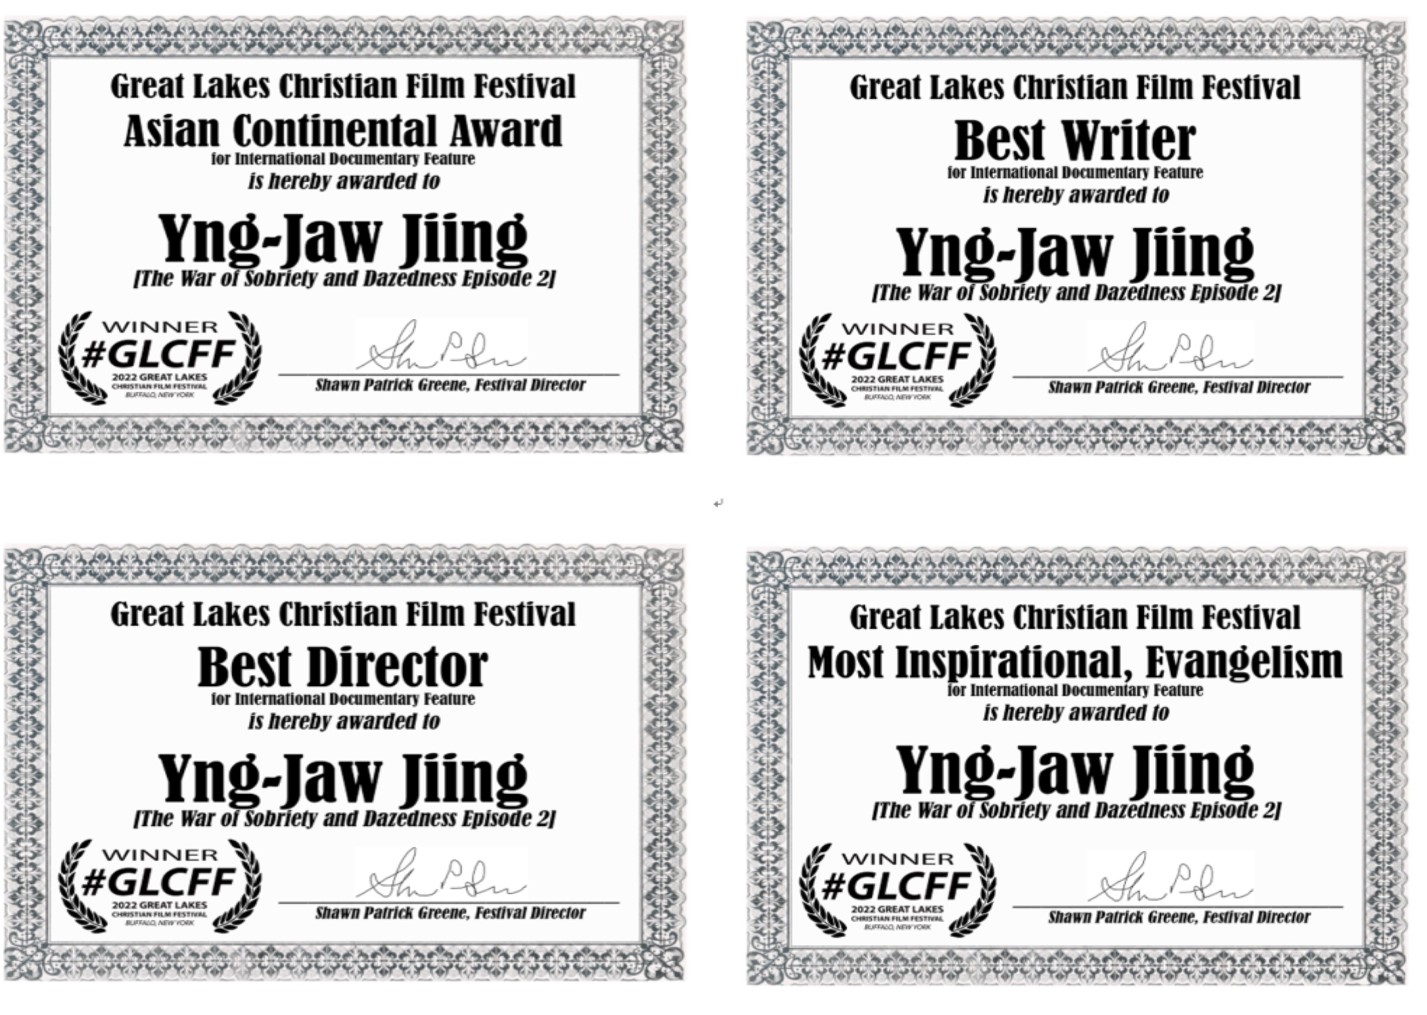 紐約大湖區基督教電影節中，榮獲最佳導演、最佳企劃、最佳佈道和代表台灣獲得亞洲區人道主義獎。